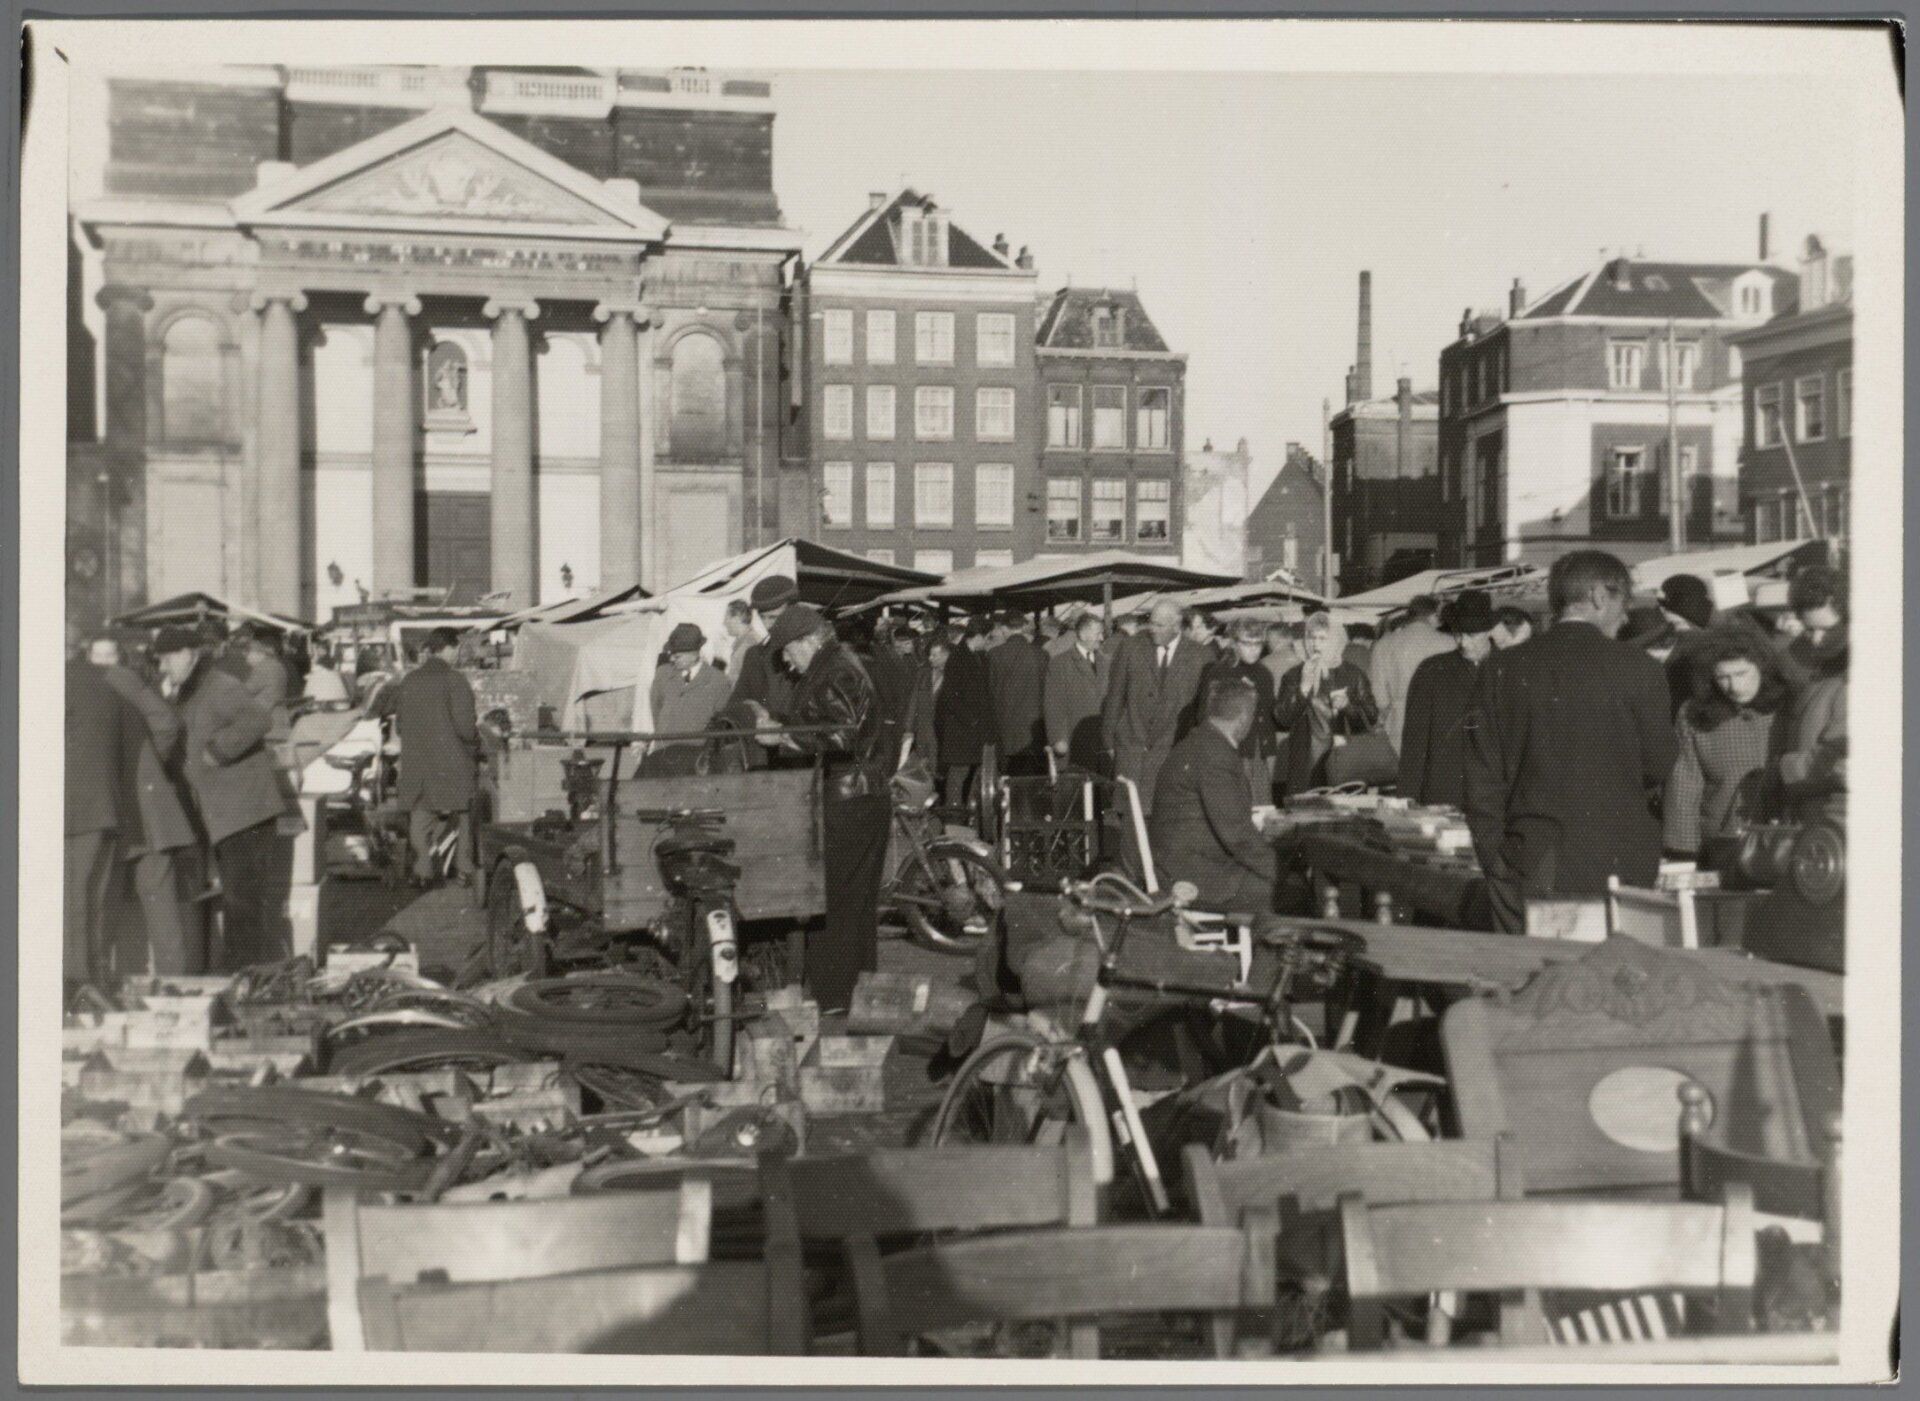 Joodsche markt op het Waterlooplein, 1940-43 - foto collectie NIOD